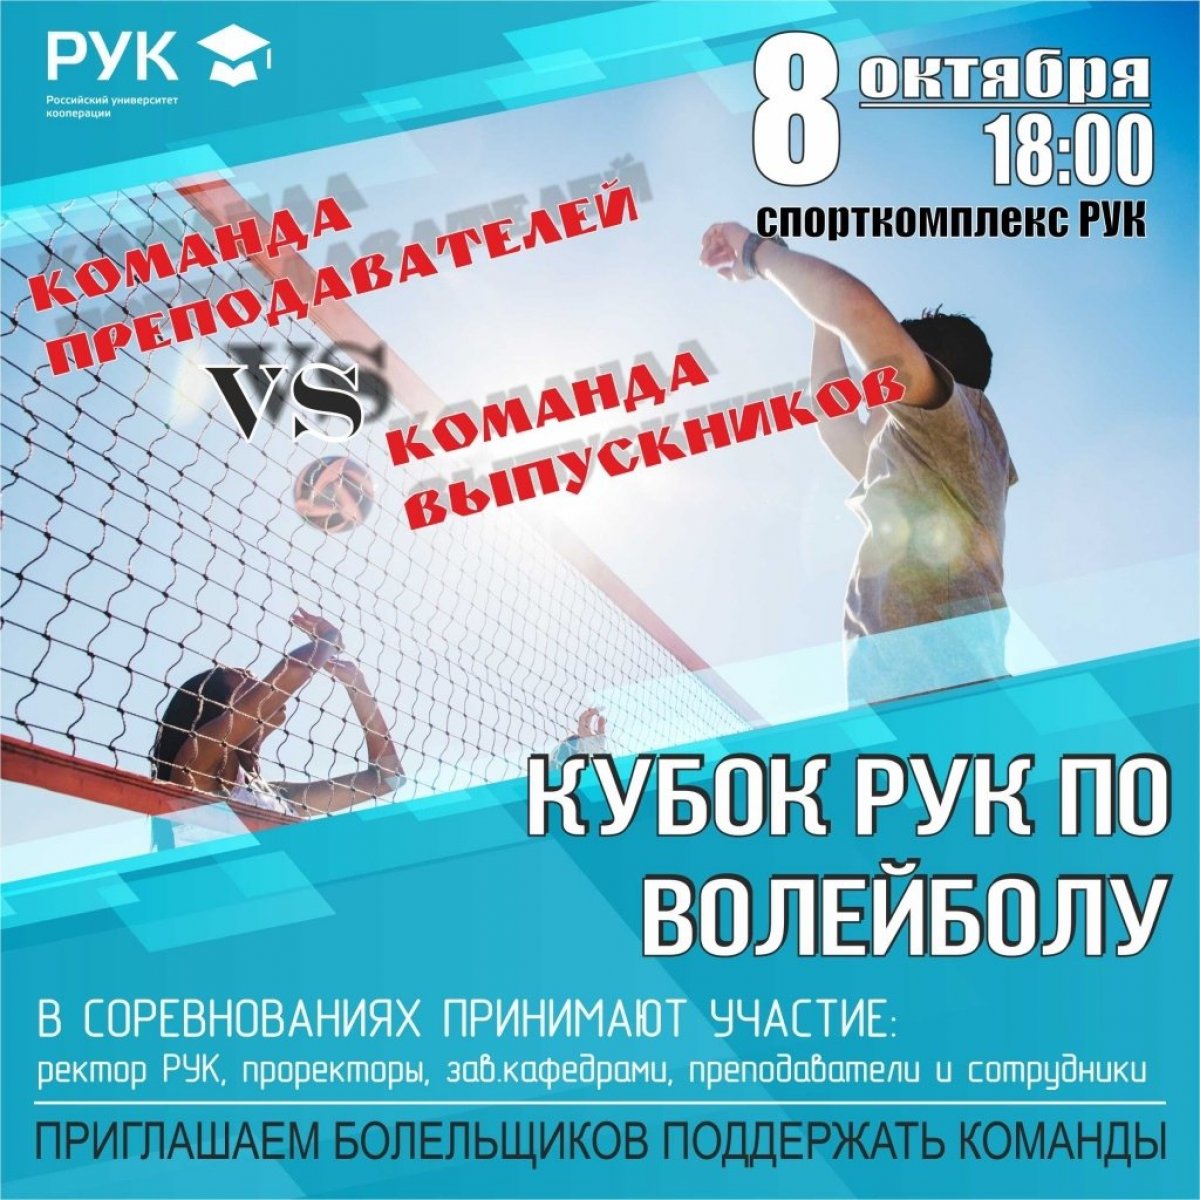 8 октября 2019 года в Российском университете кооперации пройдет Кубок РУК по волейболу. В соревнованиях принимают участие ректор РУК, проректоры, зав. кафедрами, преподаватели и сотрудники